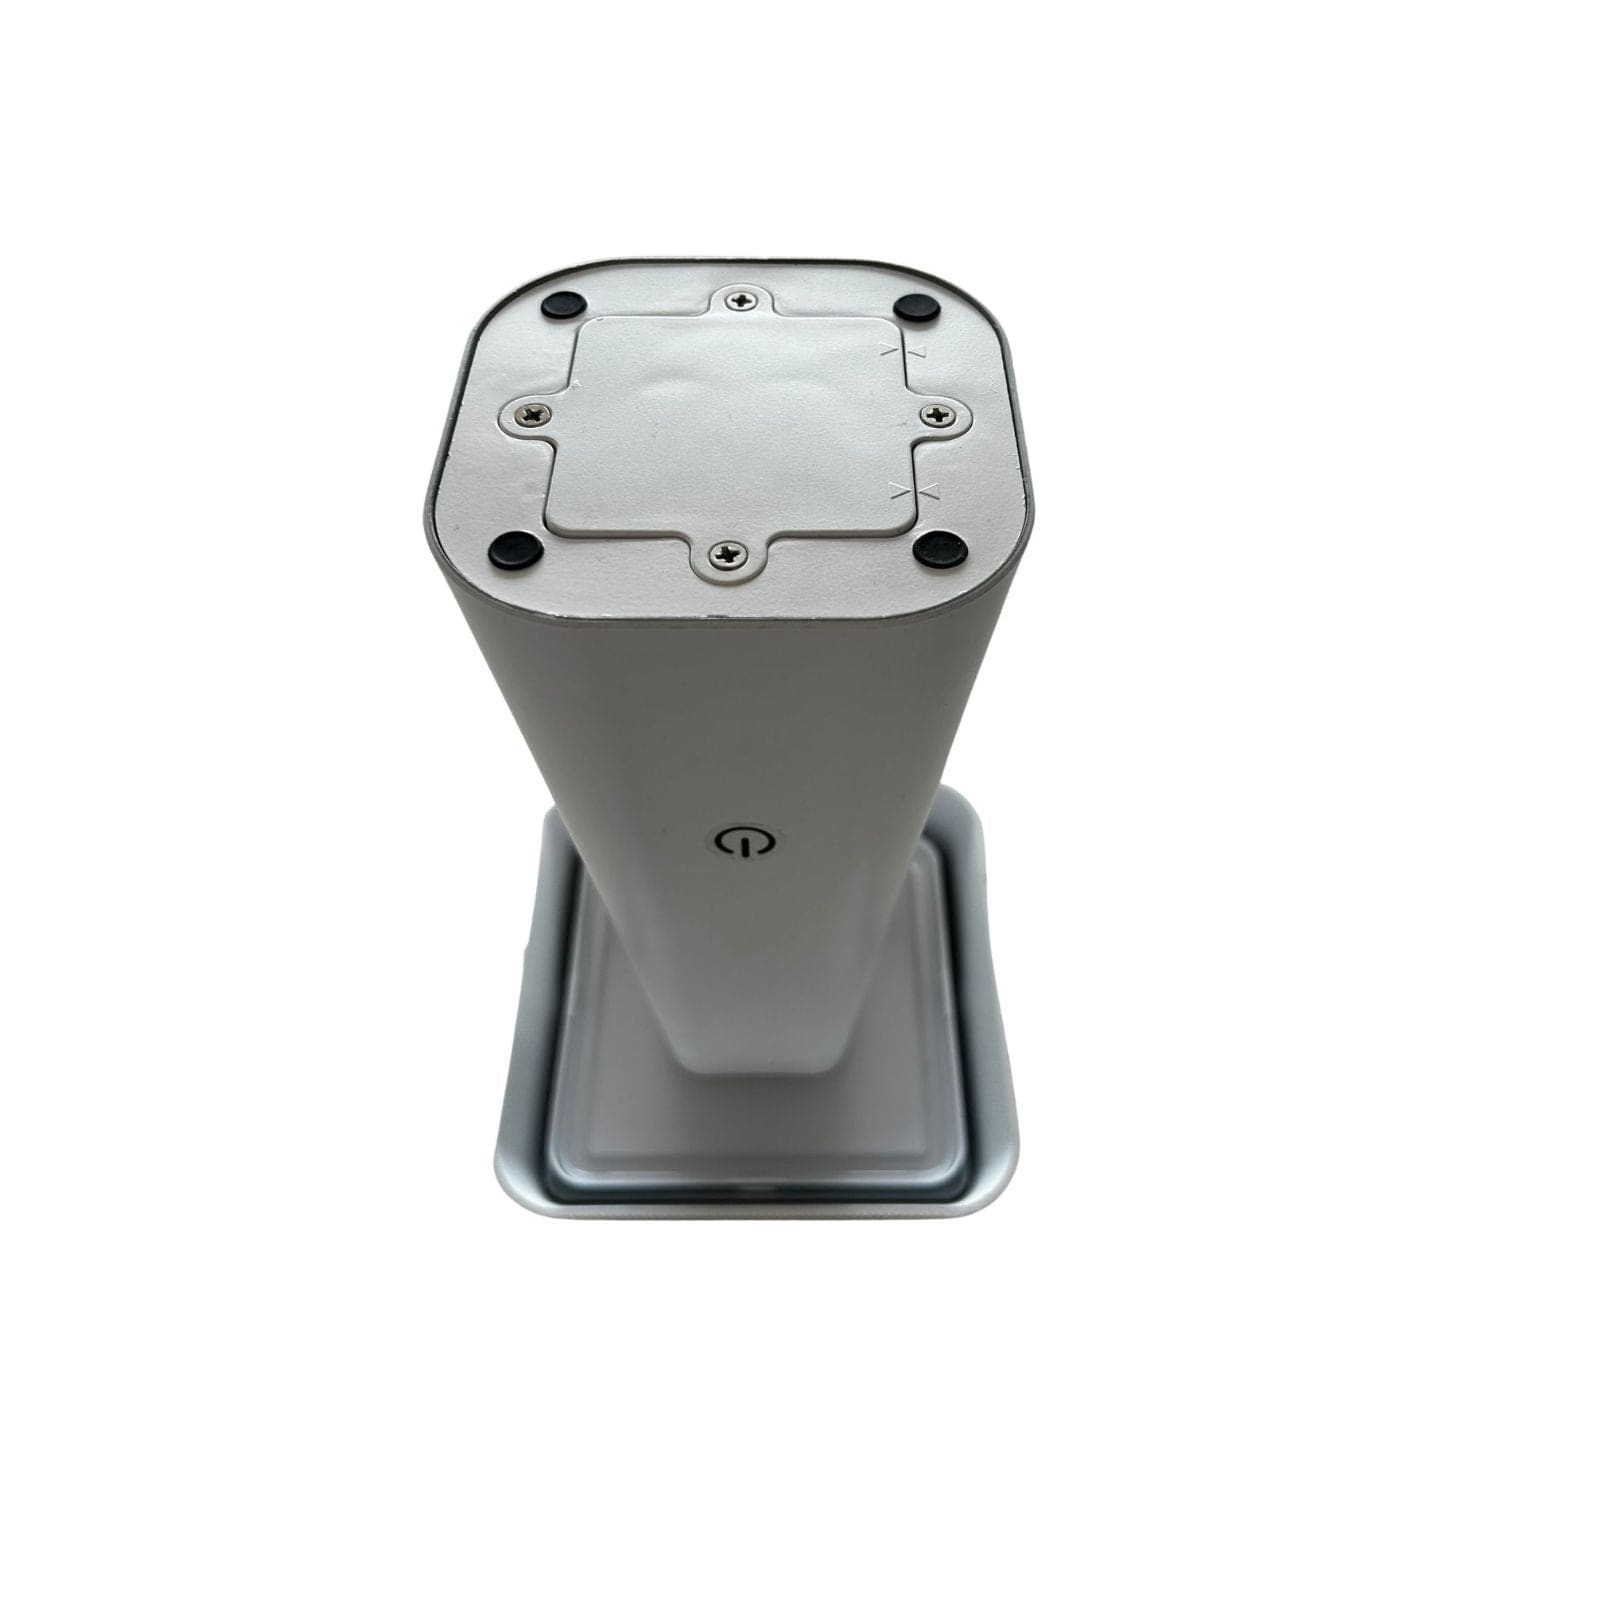 Lampe de table Led solaire blanche RITA - 3 modes d'éclairage 70 à 370 lumens - Tactile - Prise USB - Lumihome